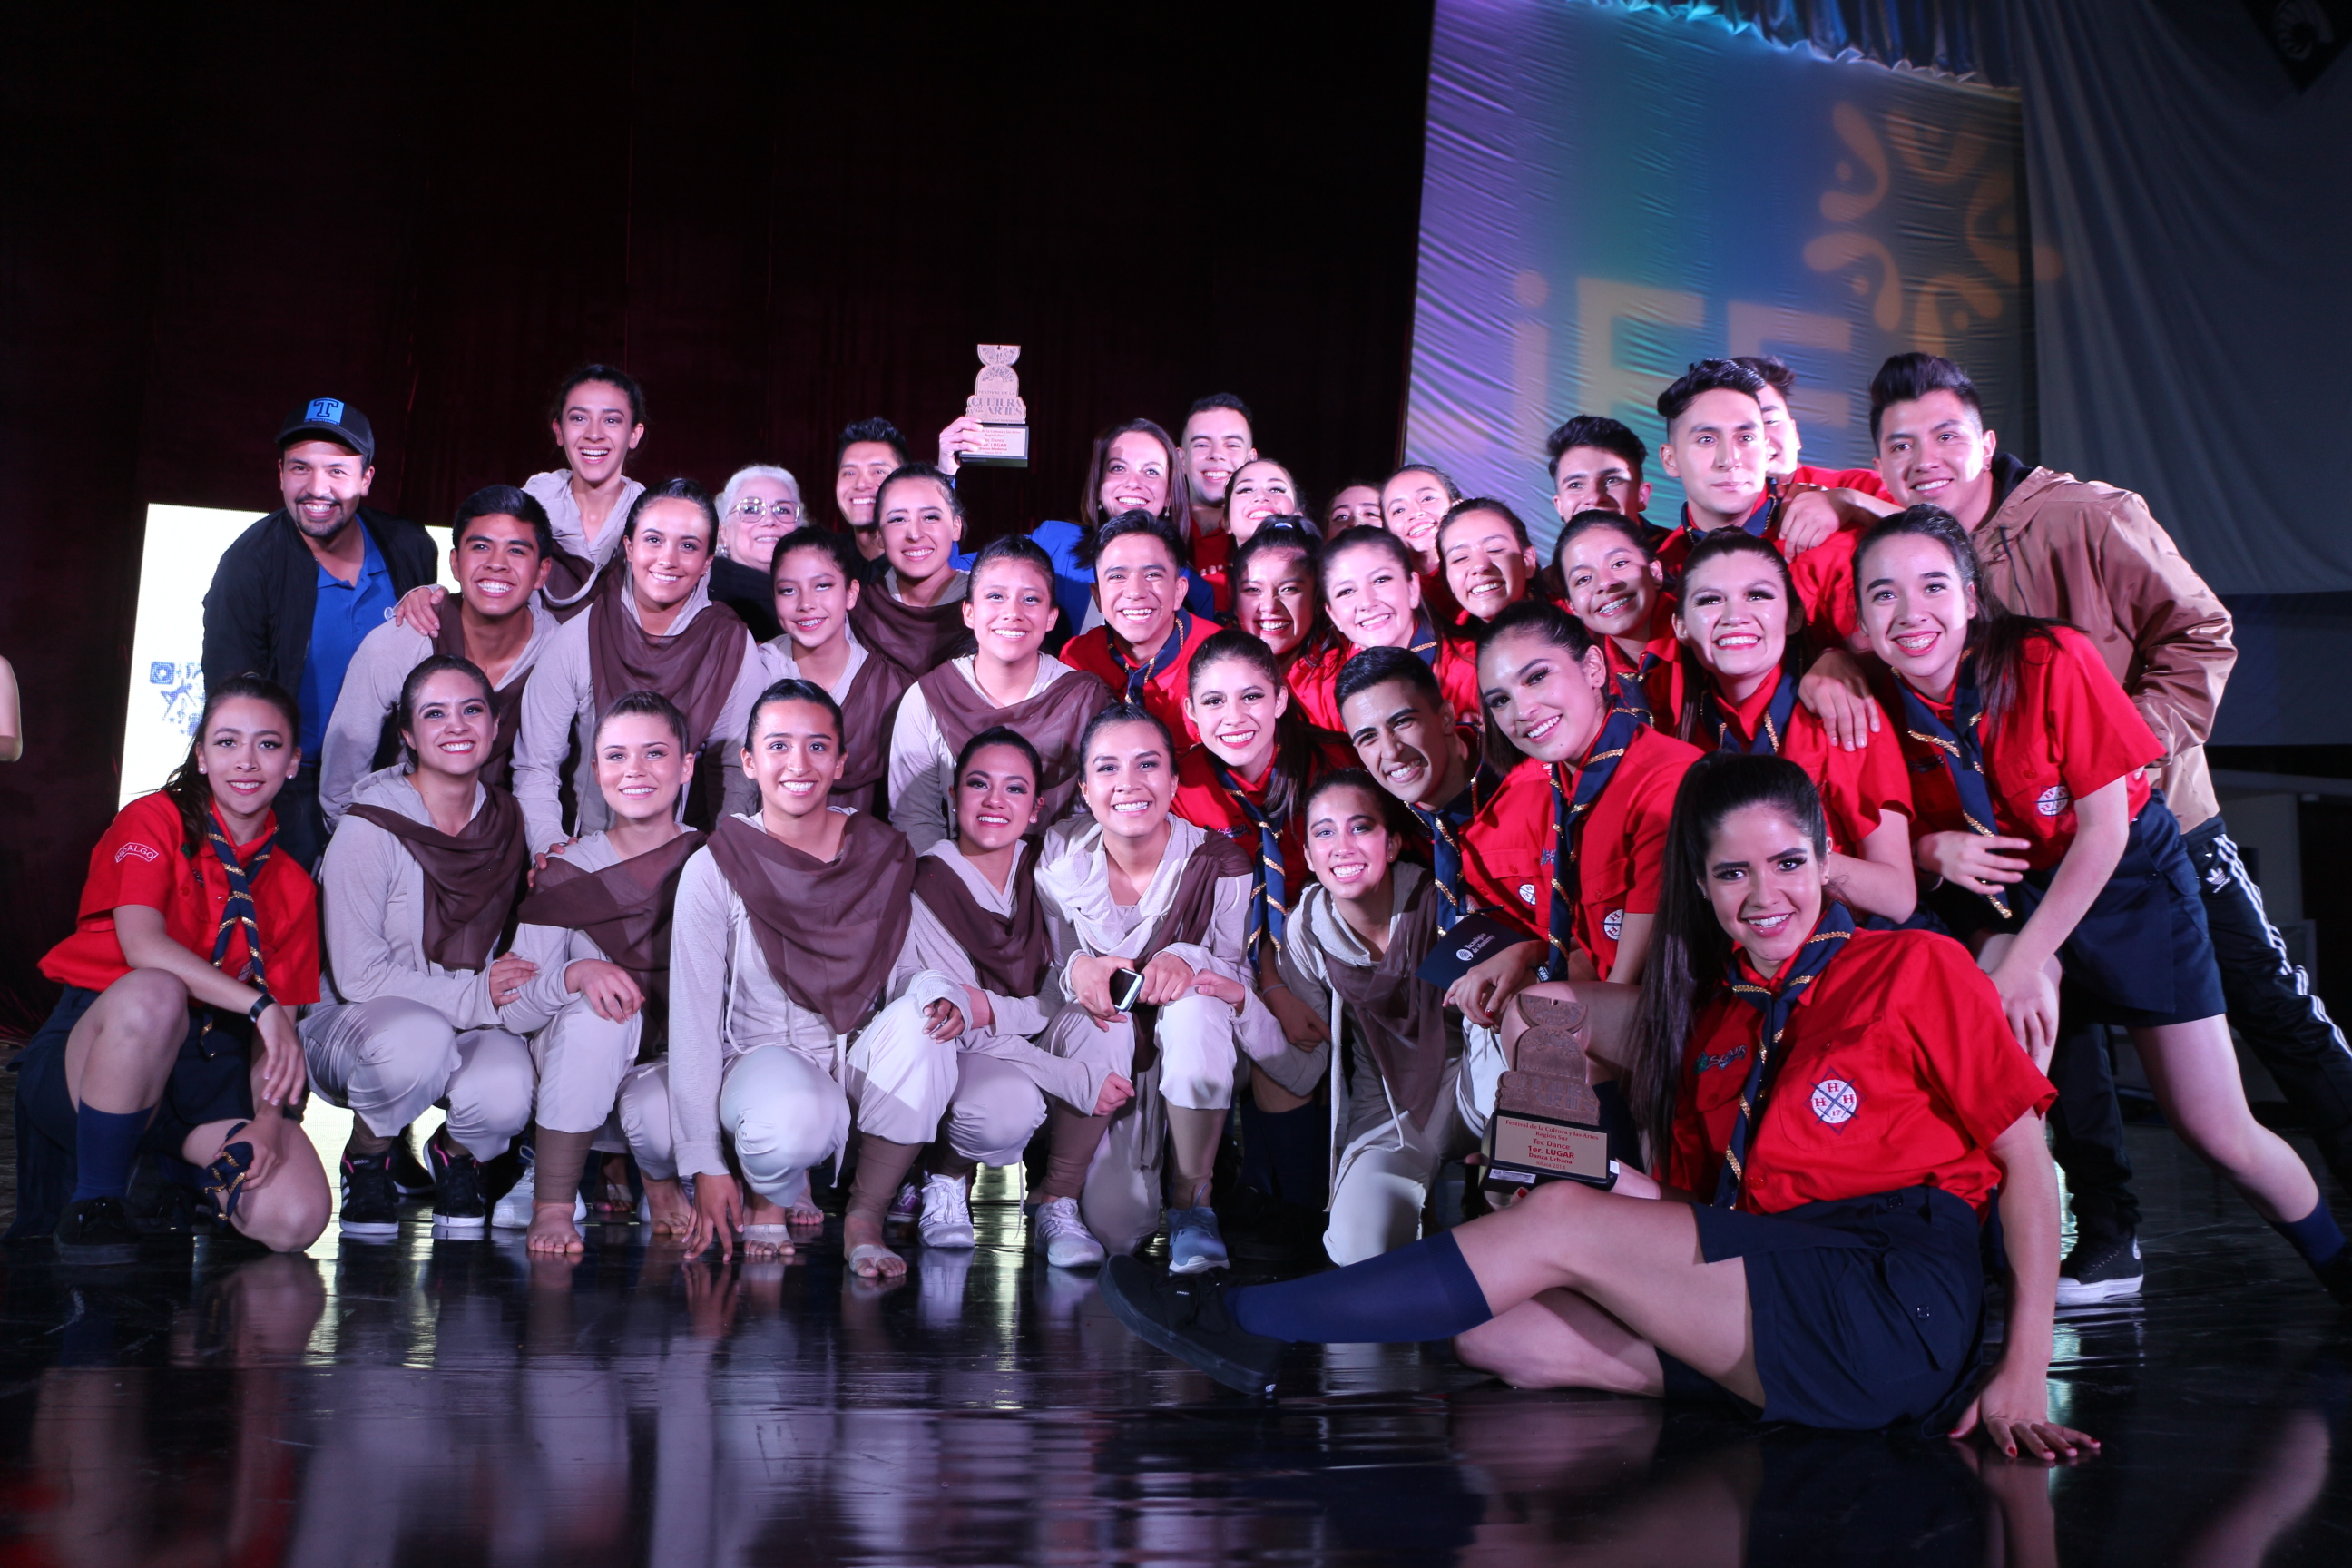 Los representativos de danza de Hidalgo recibiendo sus premios de primer luagr